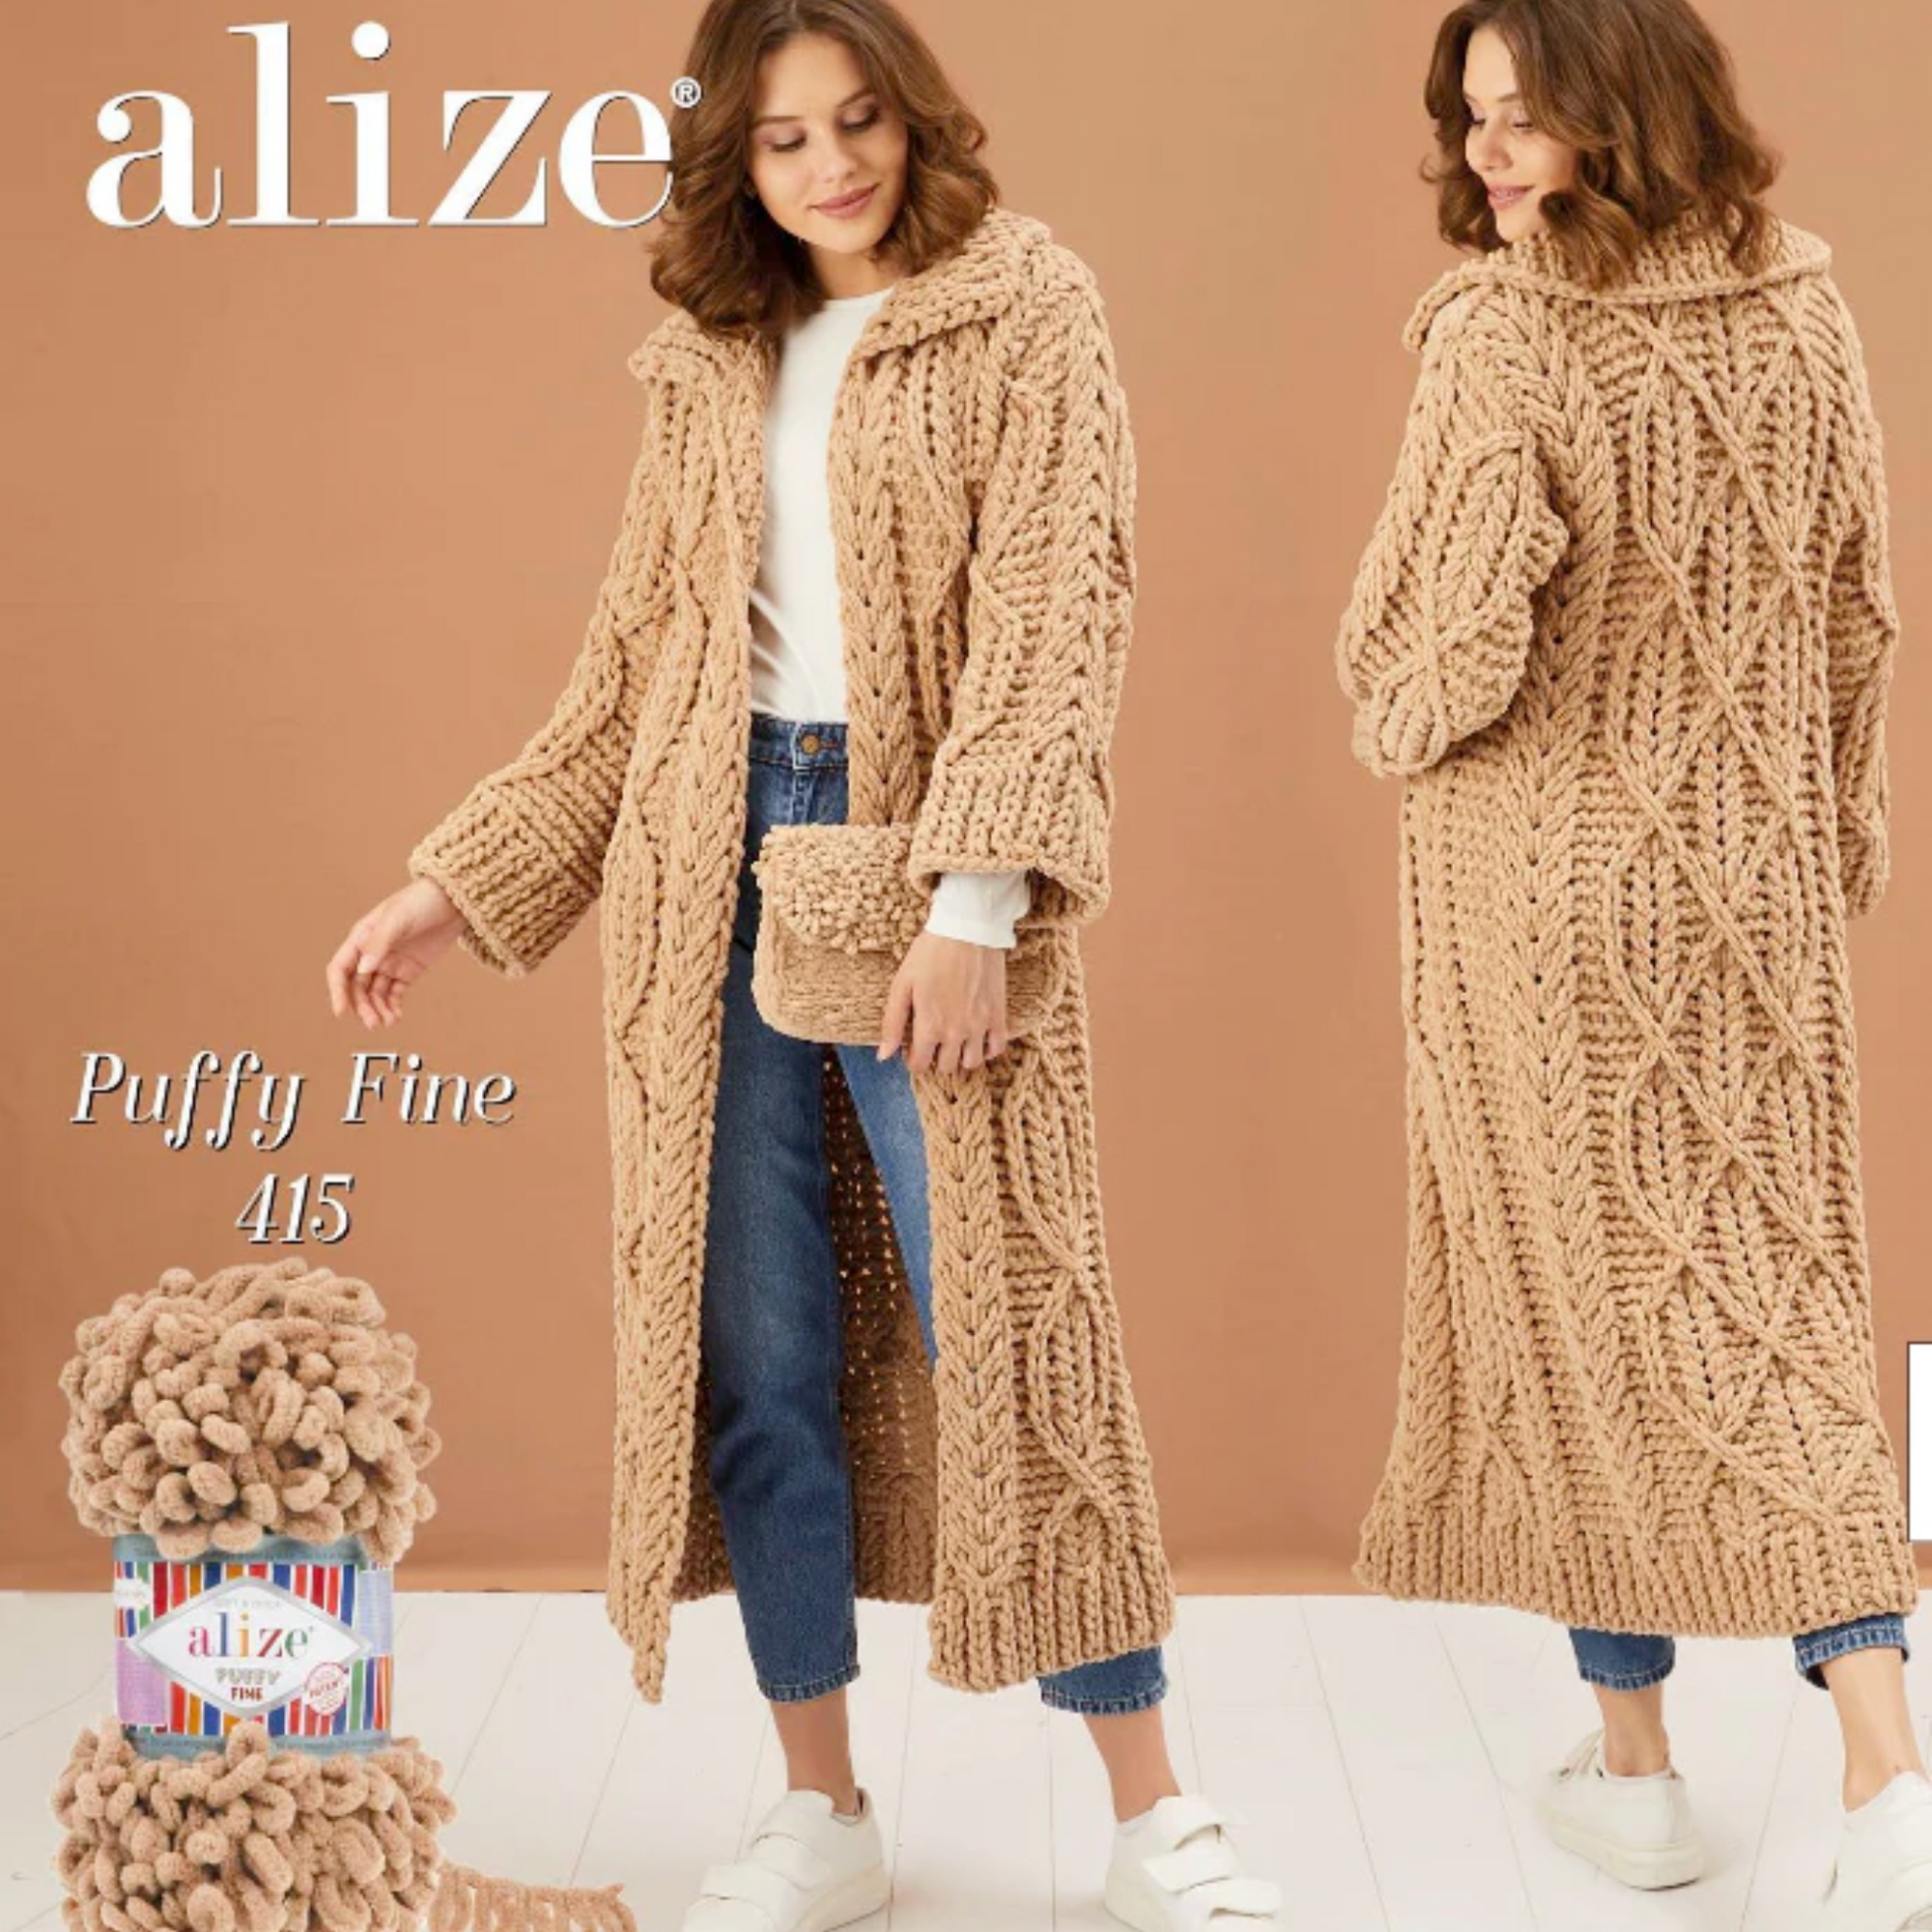 Alize Puffy Fine Yarn 100g, Powder Pink - 161